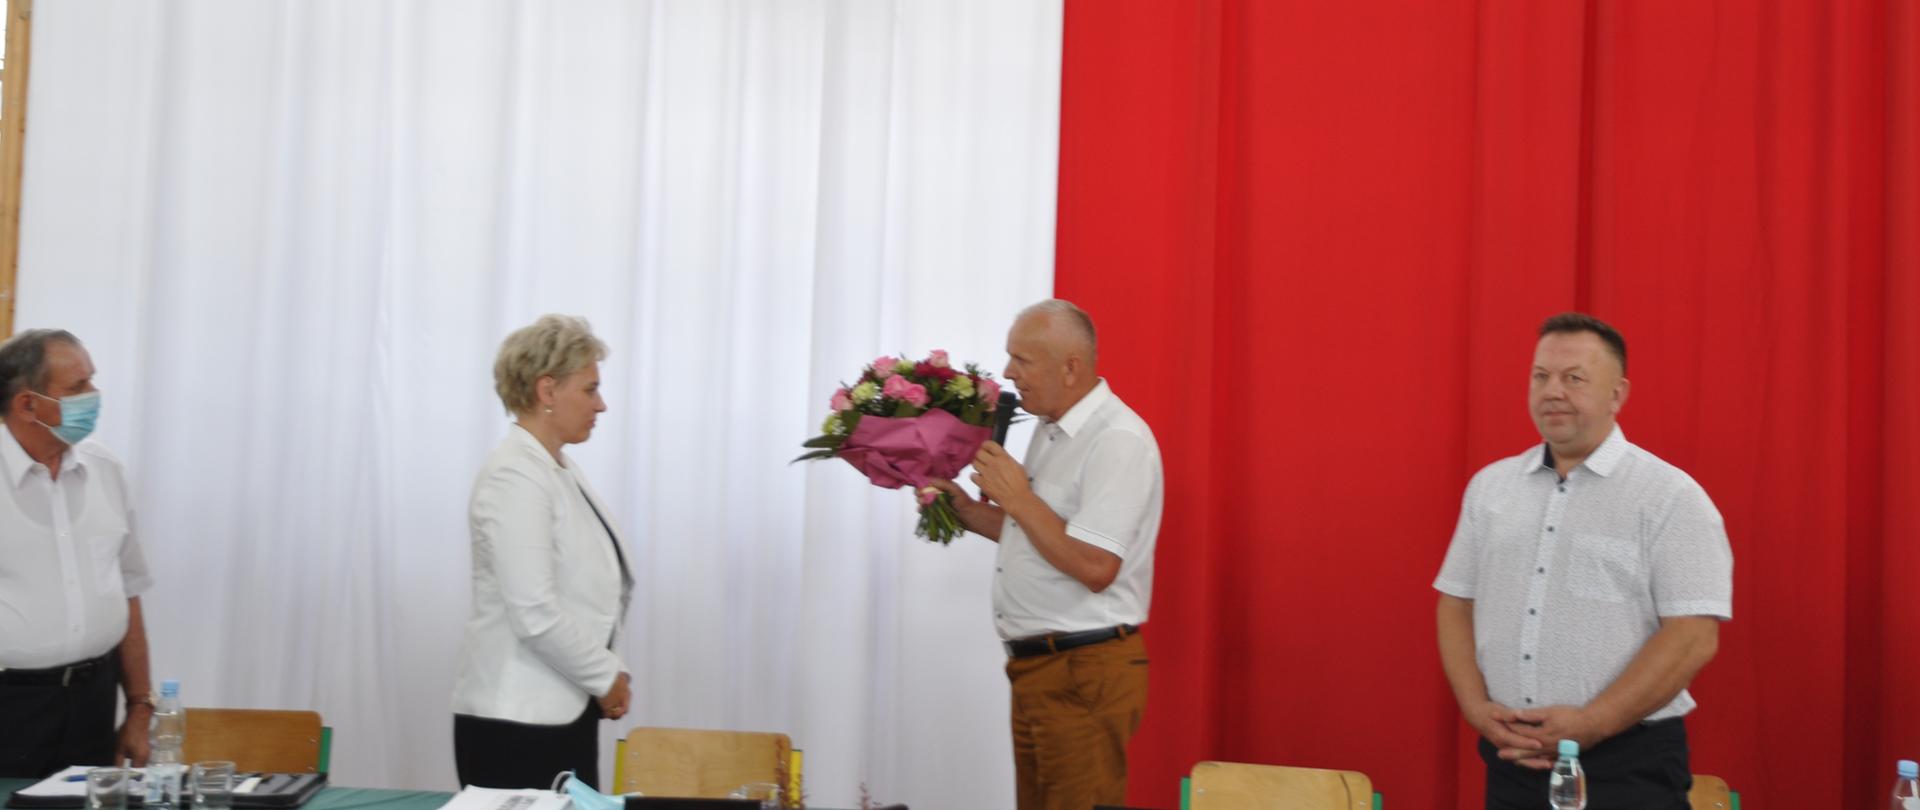 Przewodniczący Rady Gminy Adam Czarnocki wręcza kwiaty Pani Wójt Apolonii Stasiuk